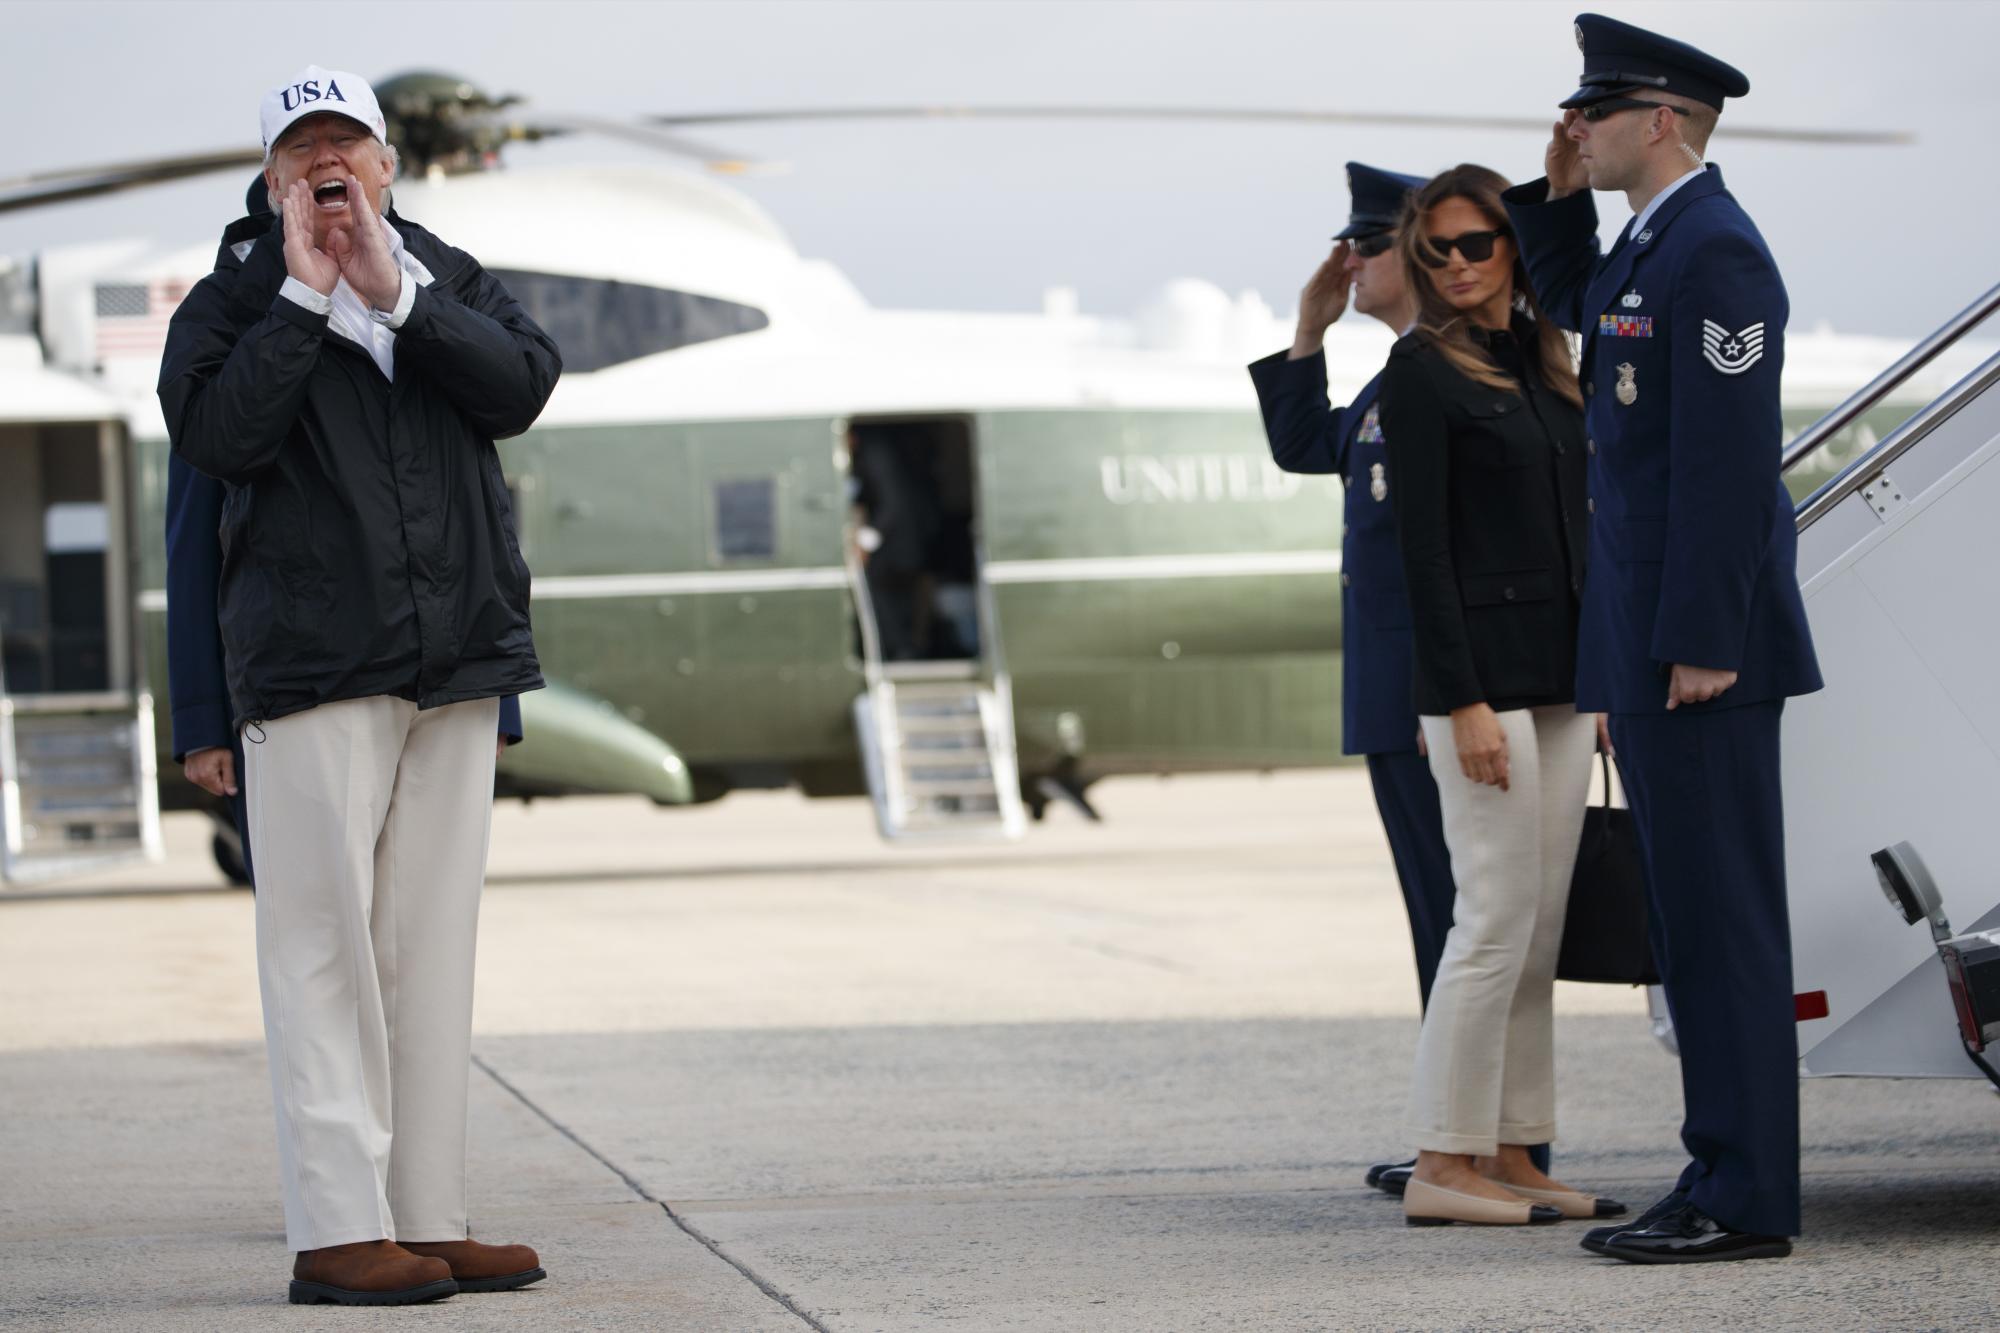 El presidente Donald Trump responde a una pregunta de los reporteros cuando aborda Air Force One con la primera dama Melania Trump para un viaje a Florida el jueves 14 de septiembre de 2017 en la Base Aérea Andrews, Maryland (AP Photo / Evan Vucci)